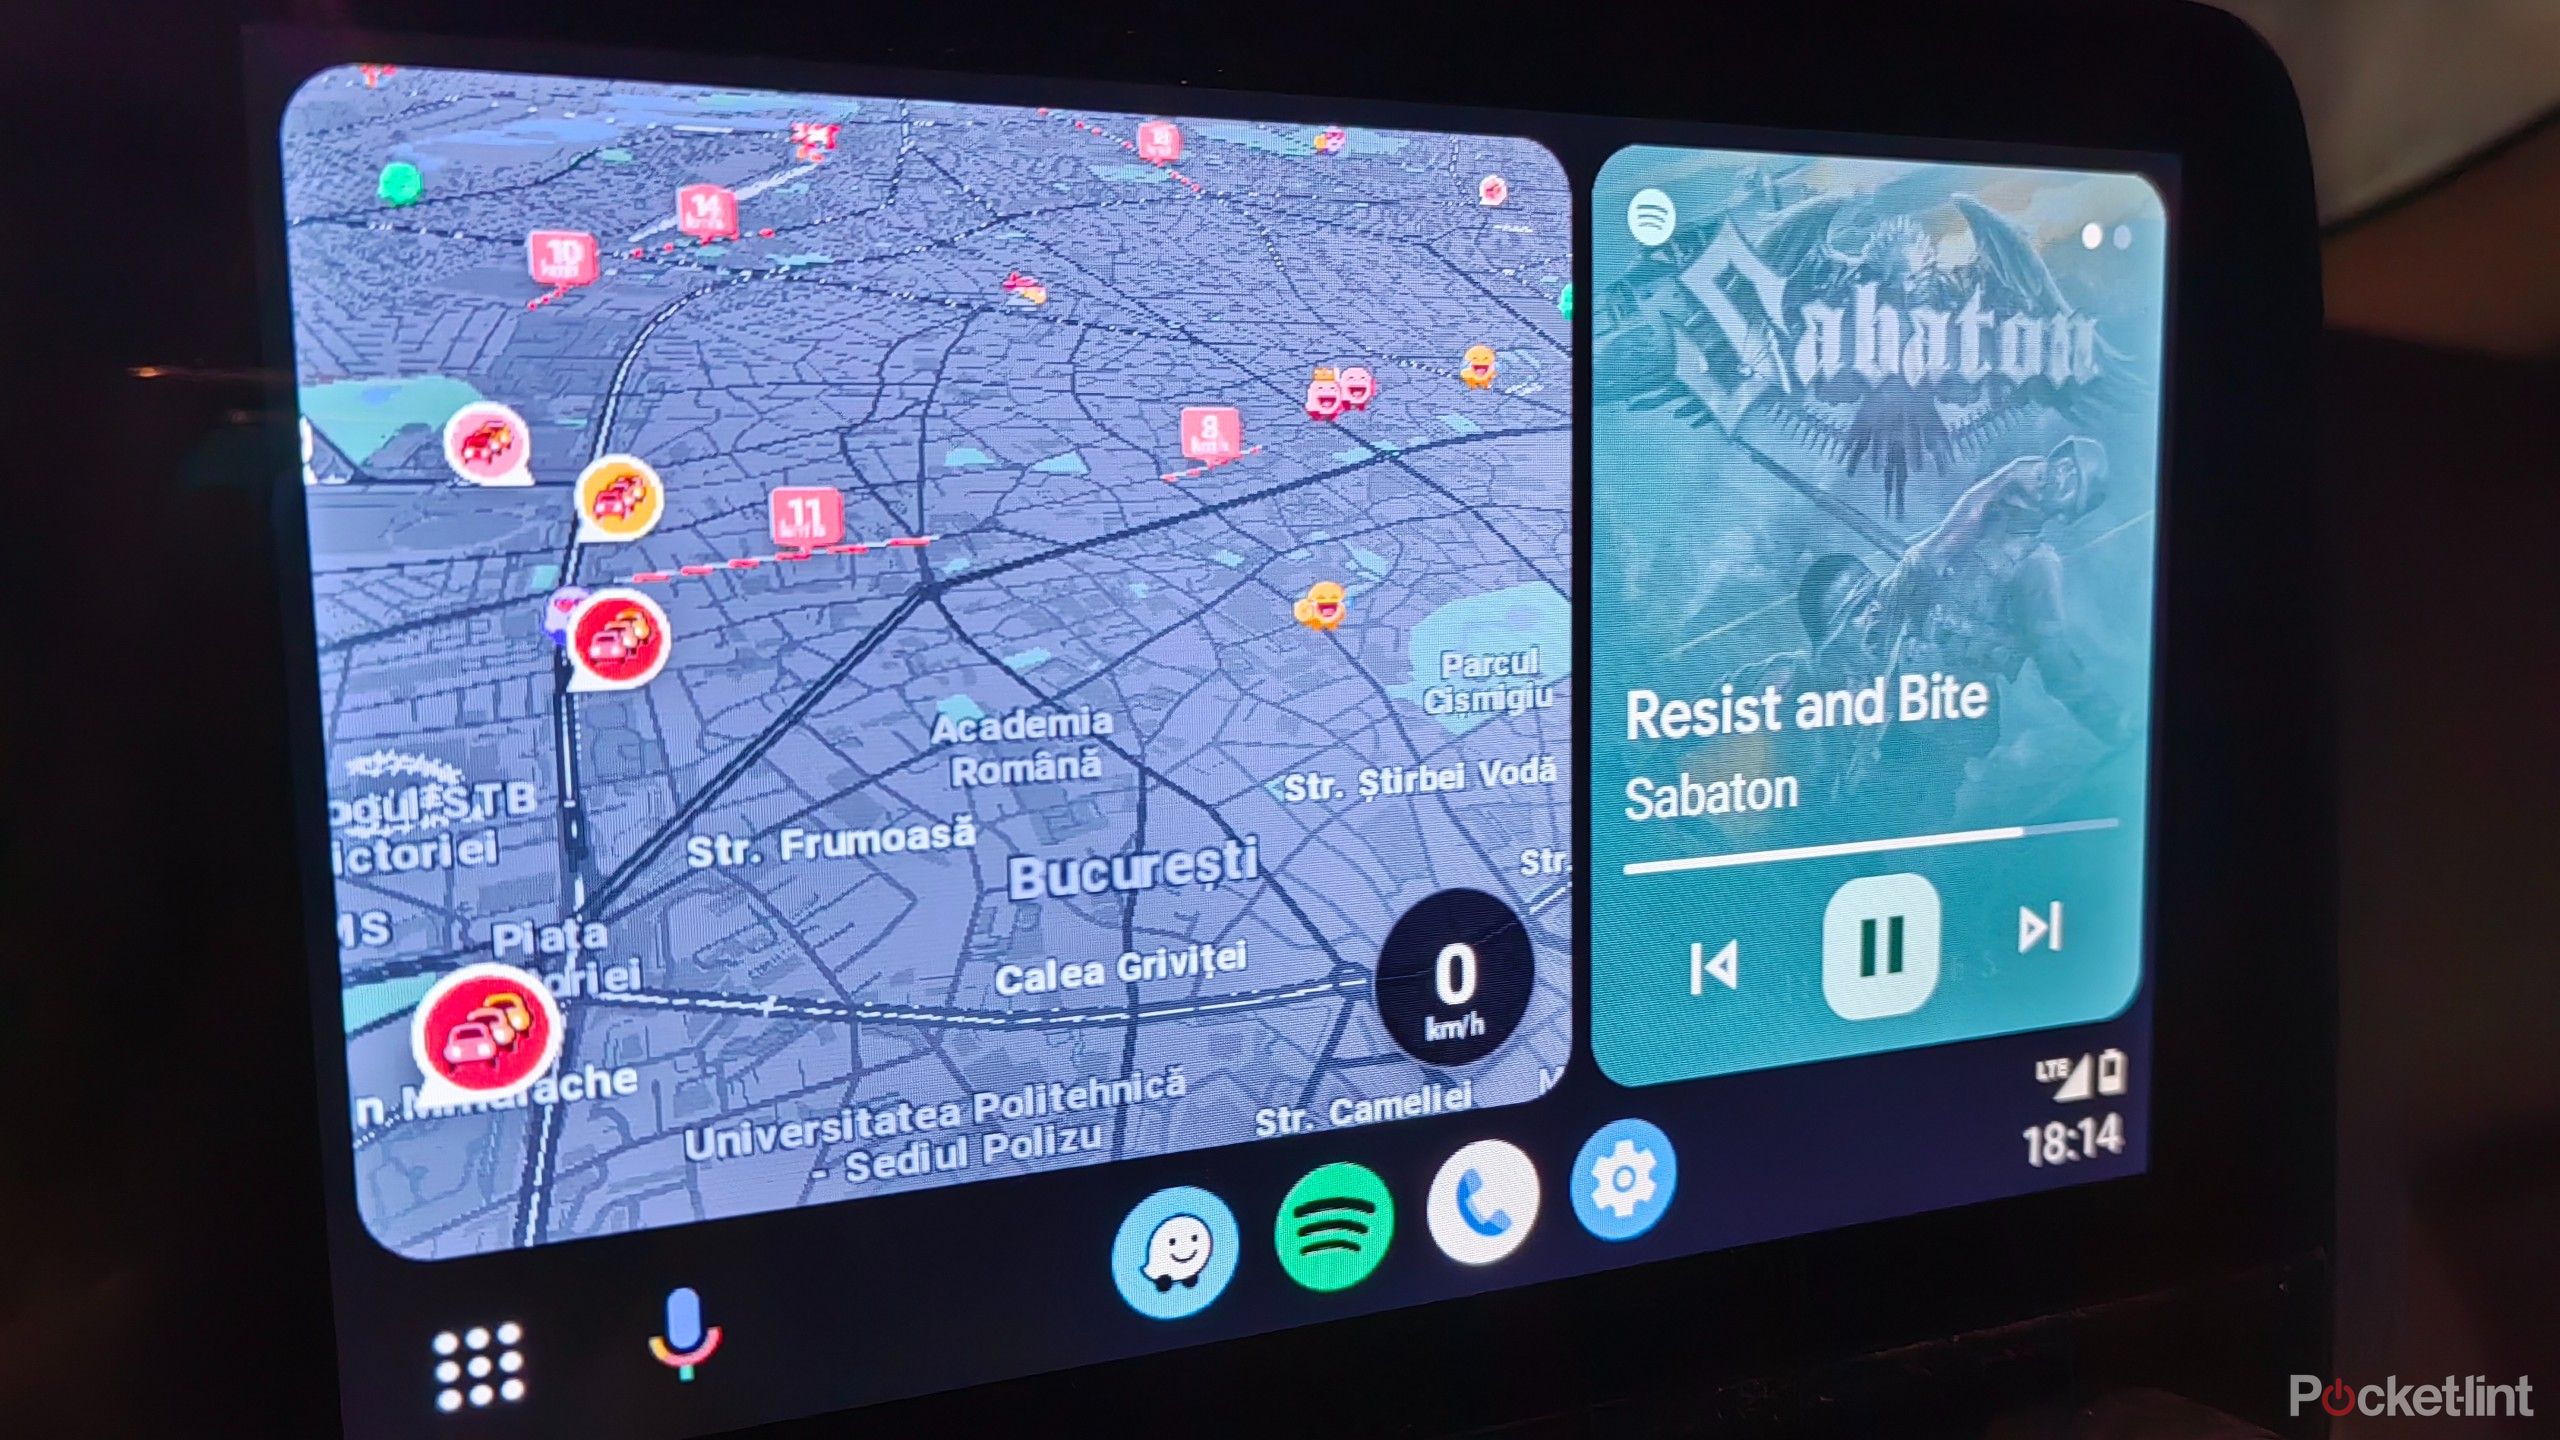 Split screen in Android Auto: noi l'abbiamo attivato. È in arrivo?